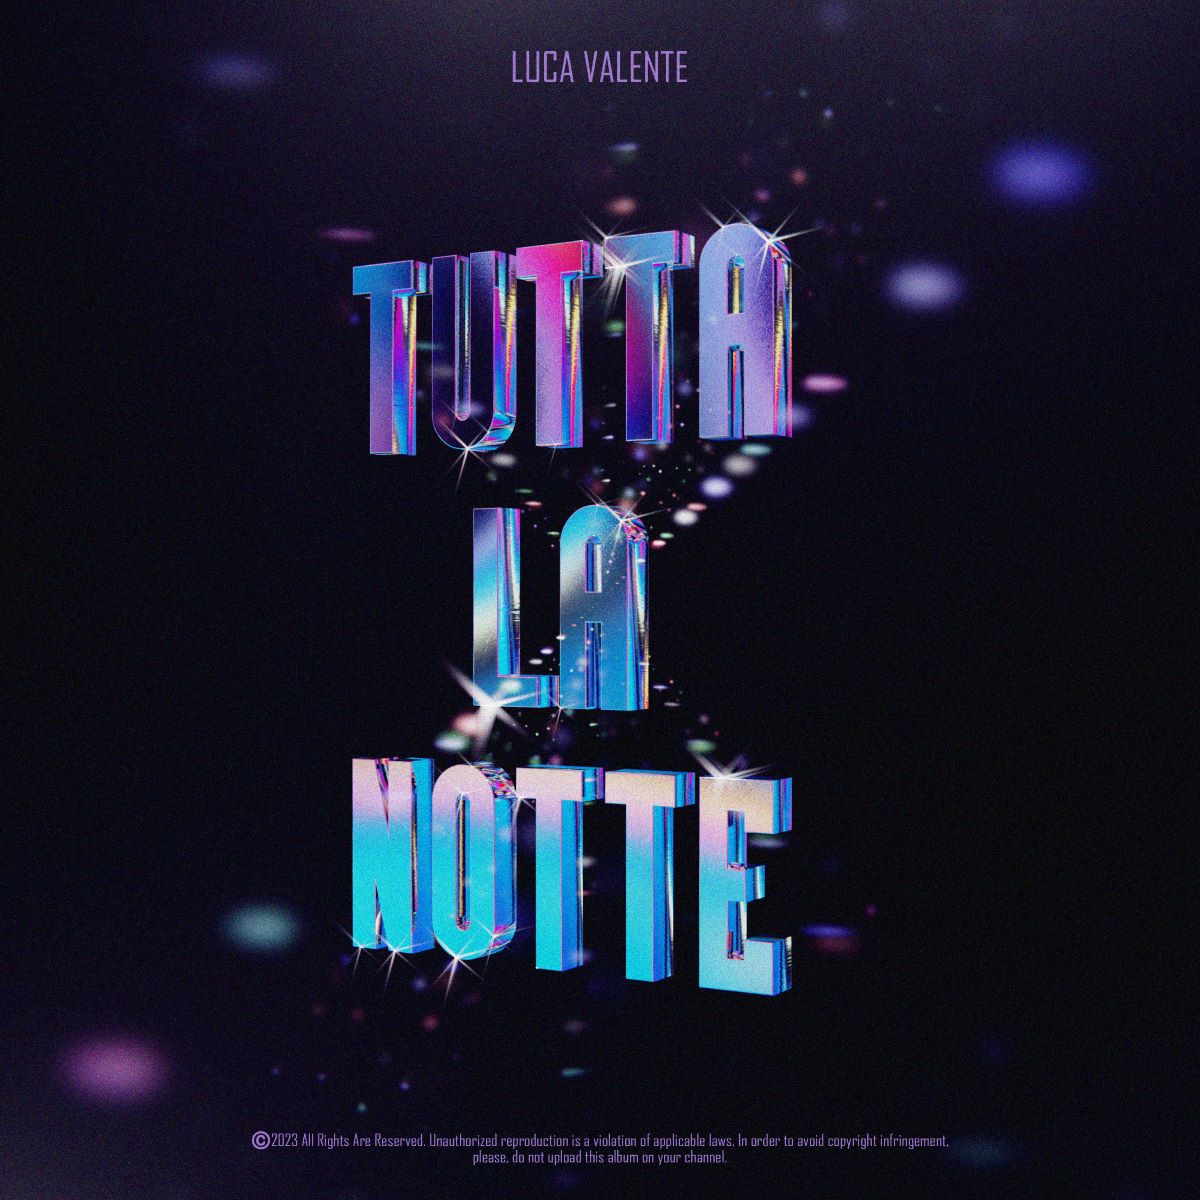 Luca Valente - “Tutta la notte”